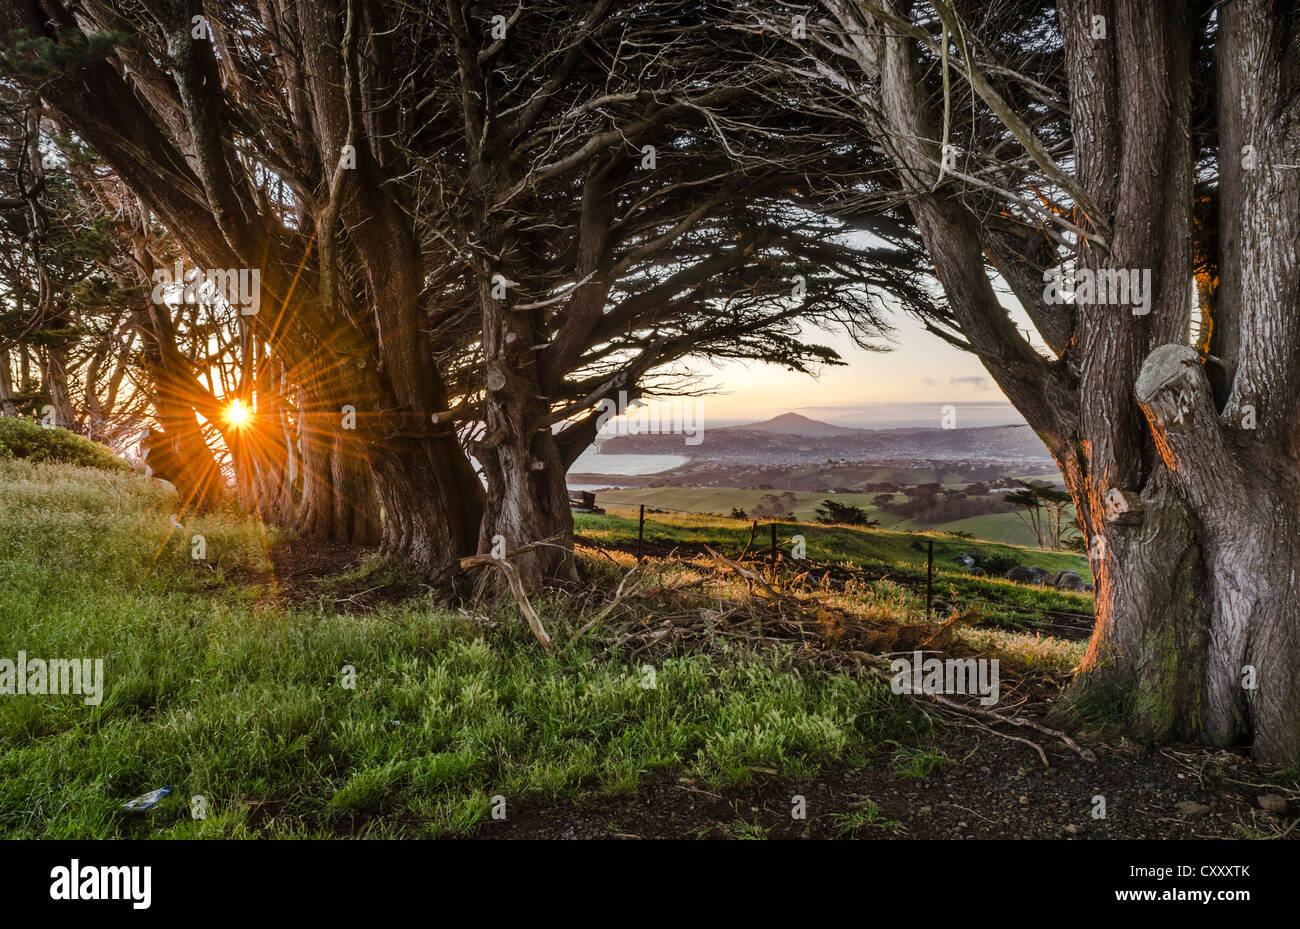 Soleil derrière de vieux arbres créant un effet de solarisation, péninsule d'Otago, île du Sud, Nouvelle-Zélande, Océanie Banque D'Images